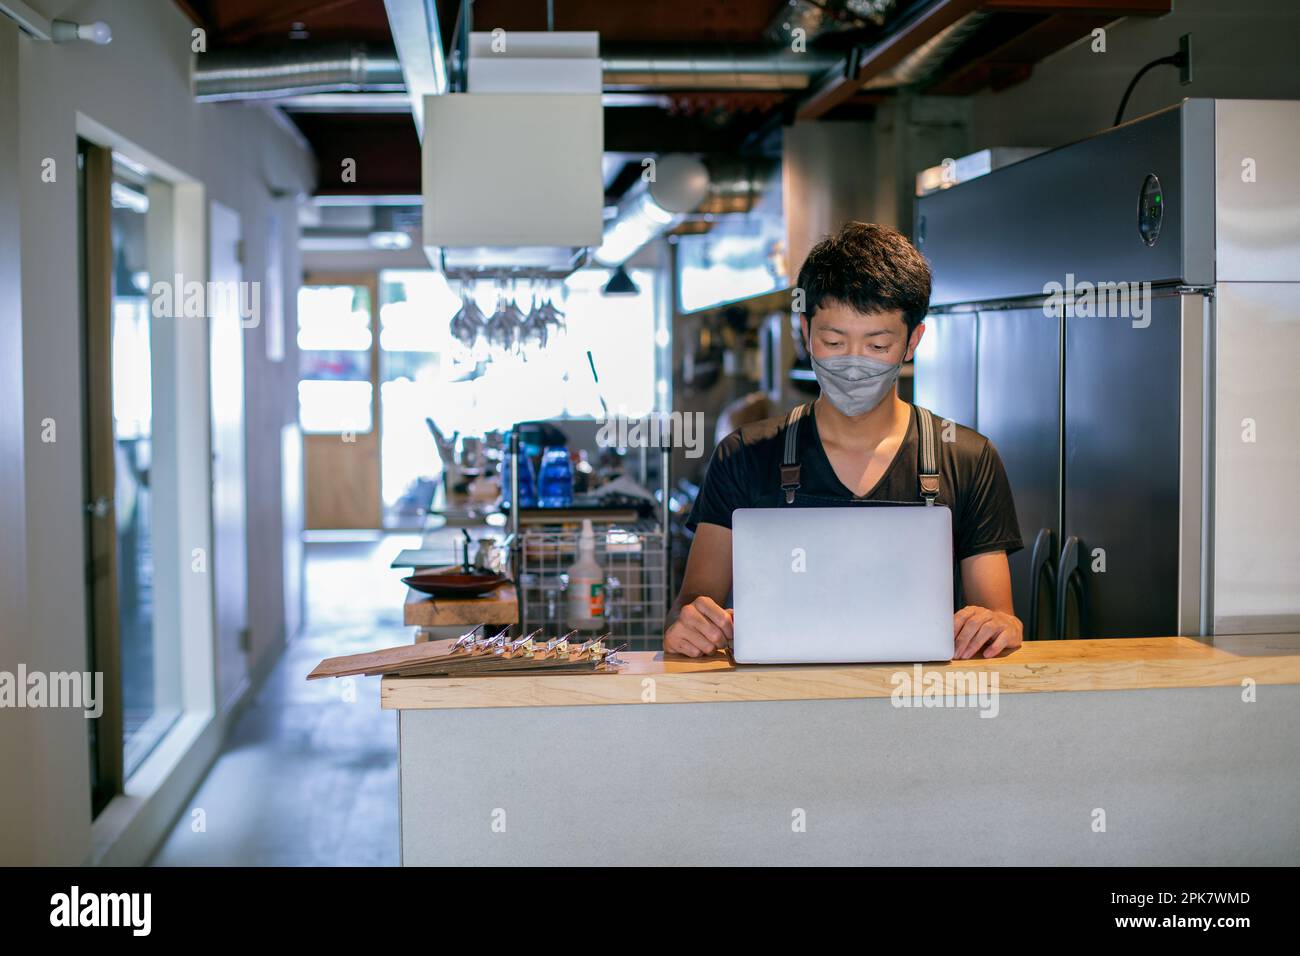 Ein Mann mit einer Gesichtsmaske in einer Restaurantküche, der einen Laptop benutzt, der Besitzer oder Manager. Stockfoto